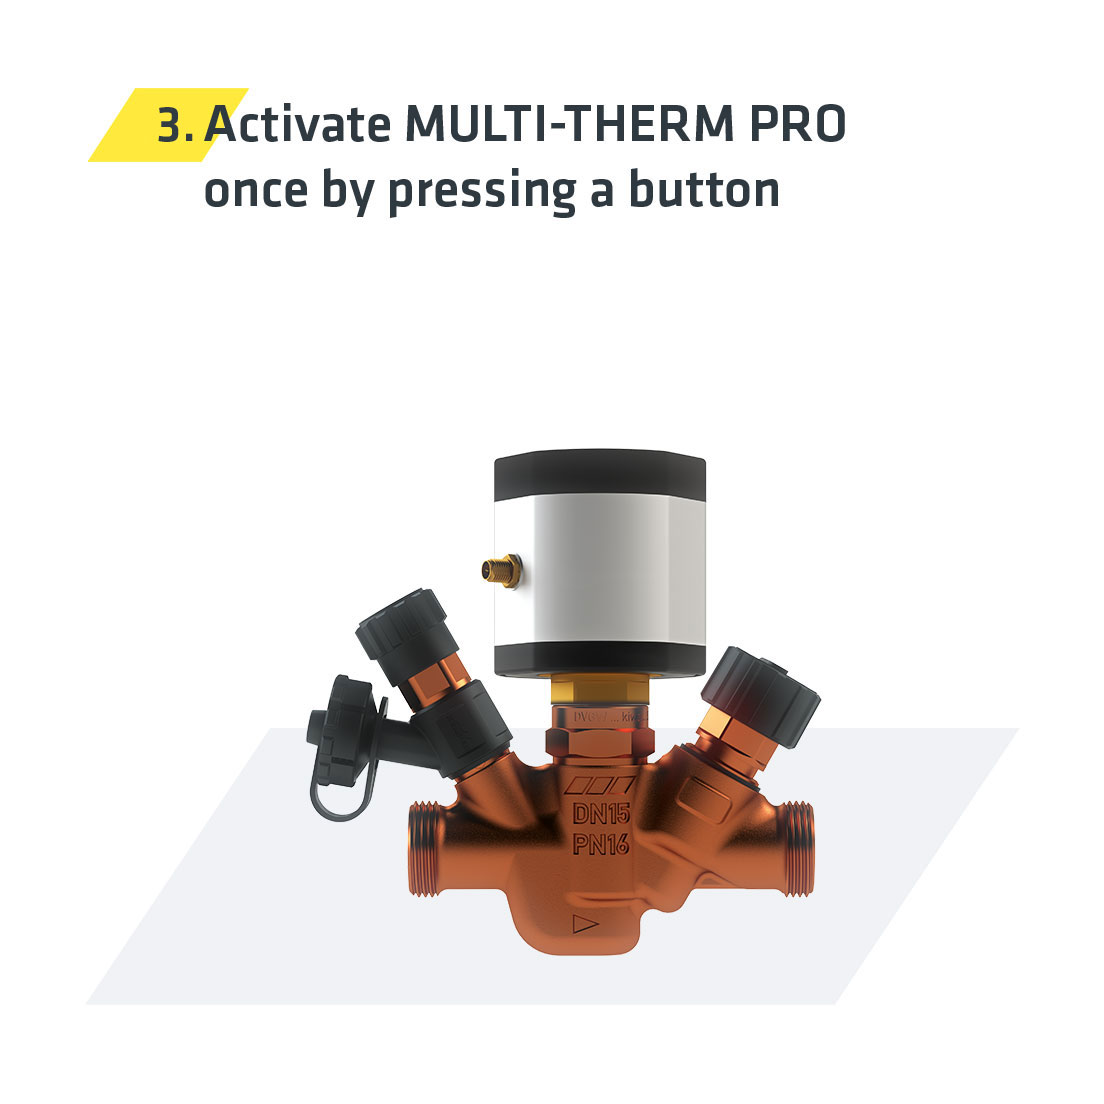 Opgrader Multi-Therm-Pro - Aktiver Multi-Term-Pro én gang ved tryk på en knap | Kemper Group